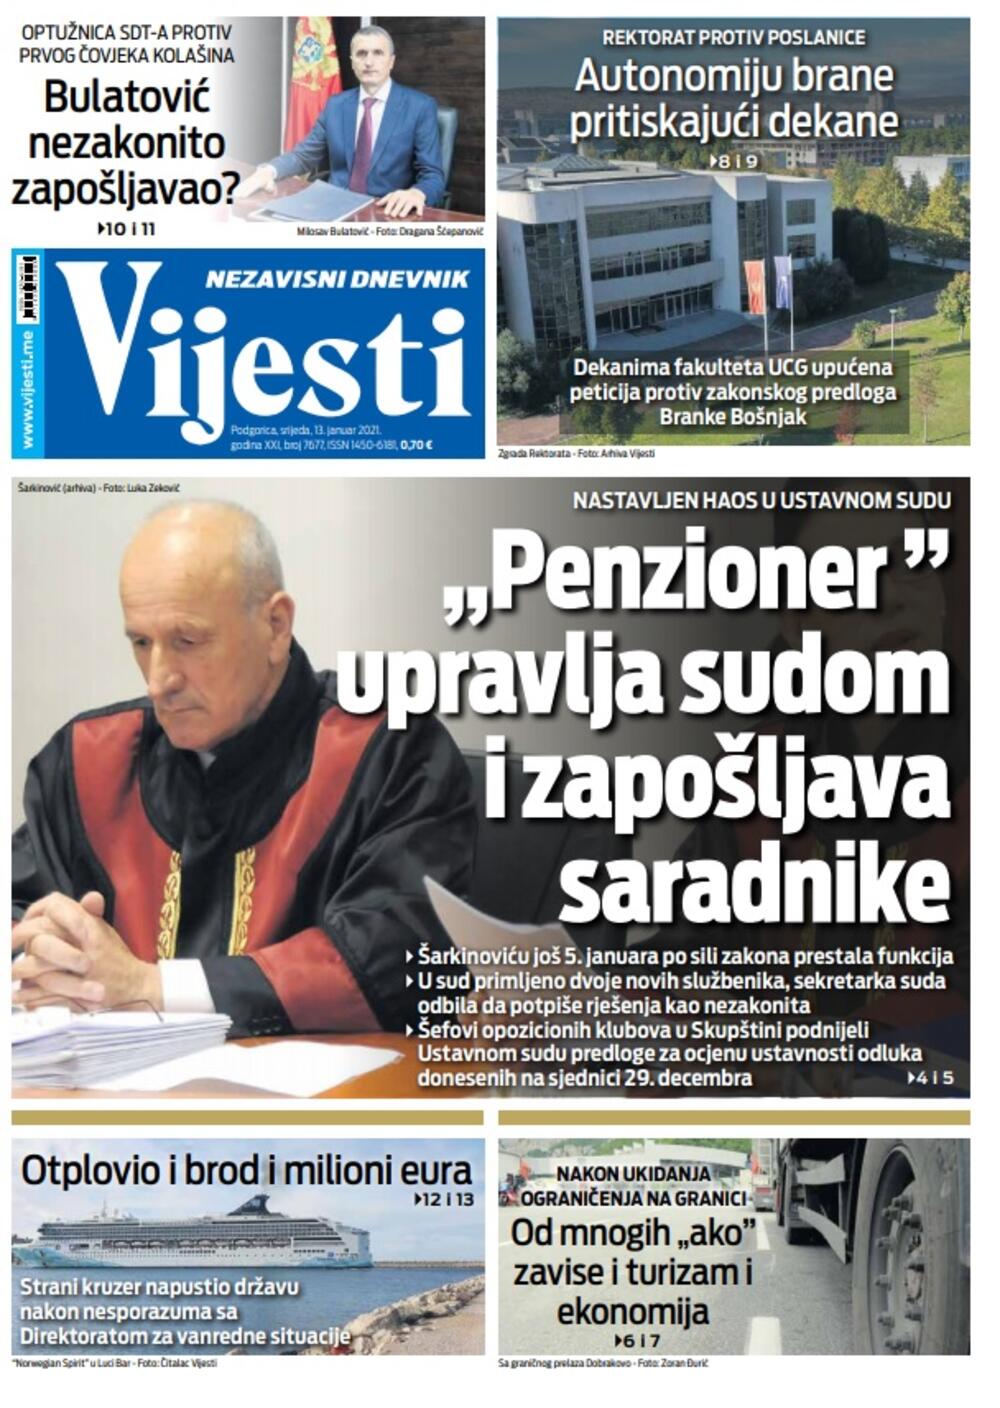 Naslovna strana "Vijesti" za srijedu 13. januar 2021. godine, Foto: Vijesti